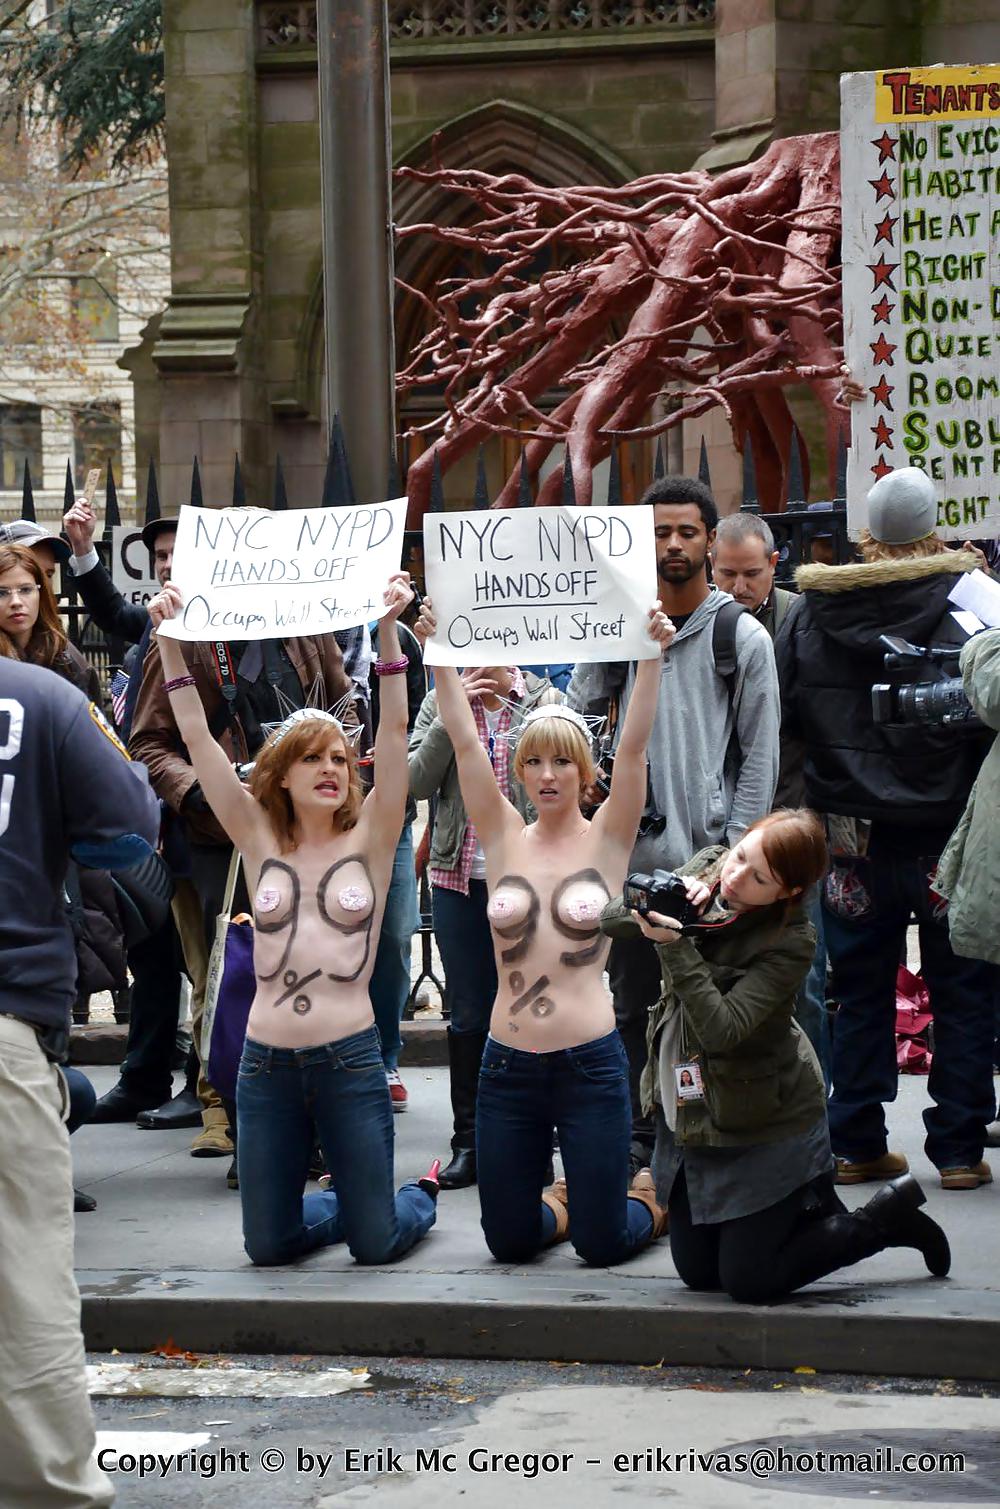 FEMEN - Filles Fraîches Protestent Par La Nudité Publique - Partie 2 #8770708